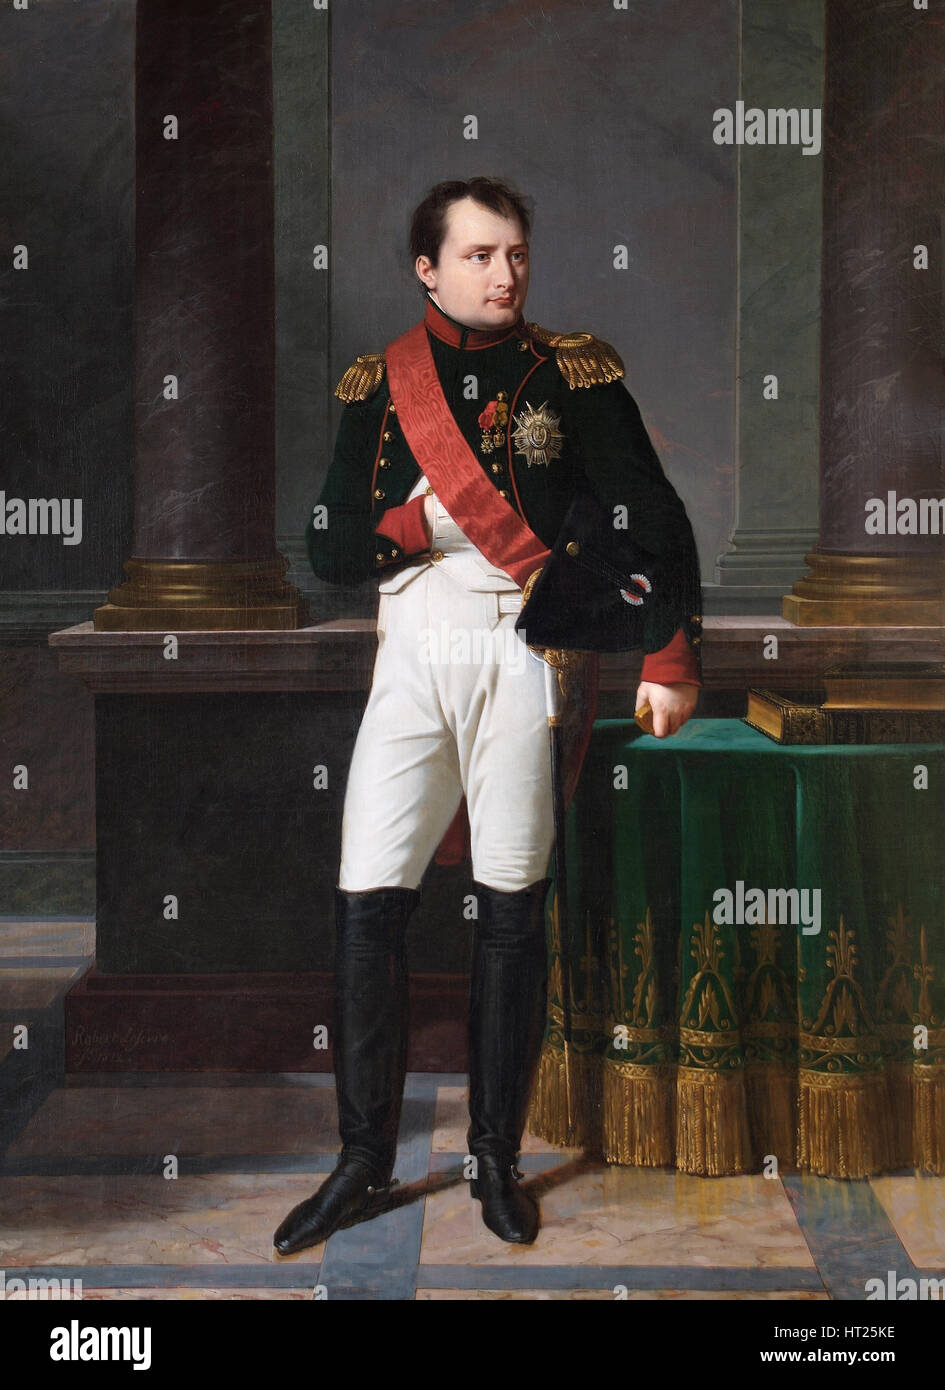 Porträt von Napoleon Bonaparte, 1812. Künstler: Robert Lefevre  Stockfotografie - Alamy